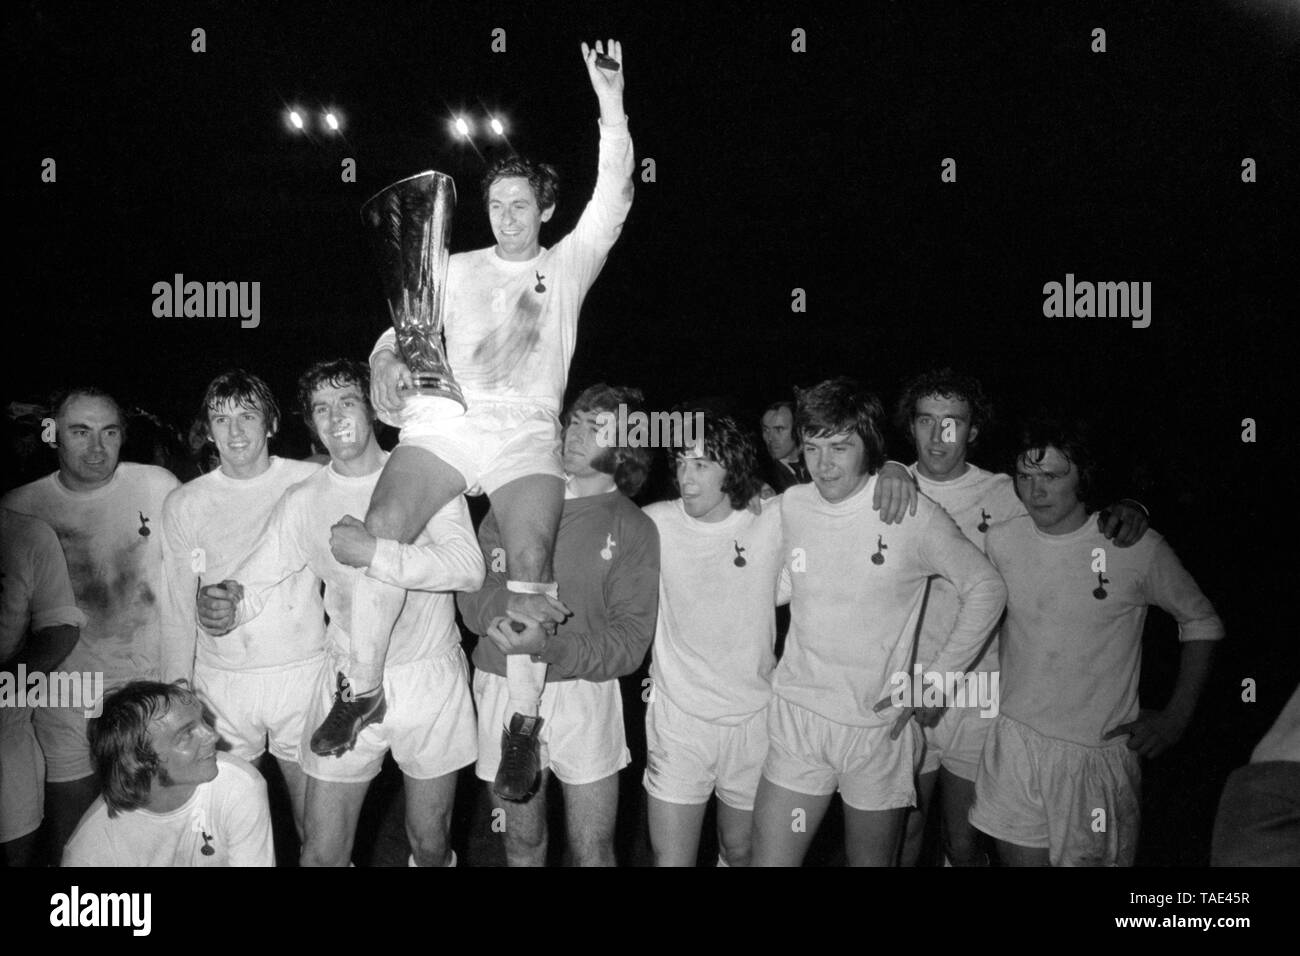 Foto vom 17-05-1972 von Tottenham Hotspur Kapitän Alan Mullery hält auf den UEFA-Pokal, als er von seinem Jubelnden Teamkollegen geleitet wird: (L-R) Alan Gilzean, Phil Beal (unten), Martin Peters, Mike England, Mullery, Pat Jennings, Joe Kinnear, Cyril Knowles, Martin Chivers, Steve Perryman. Stockfoto